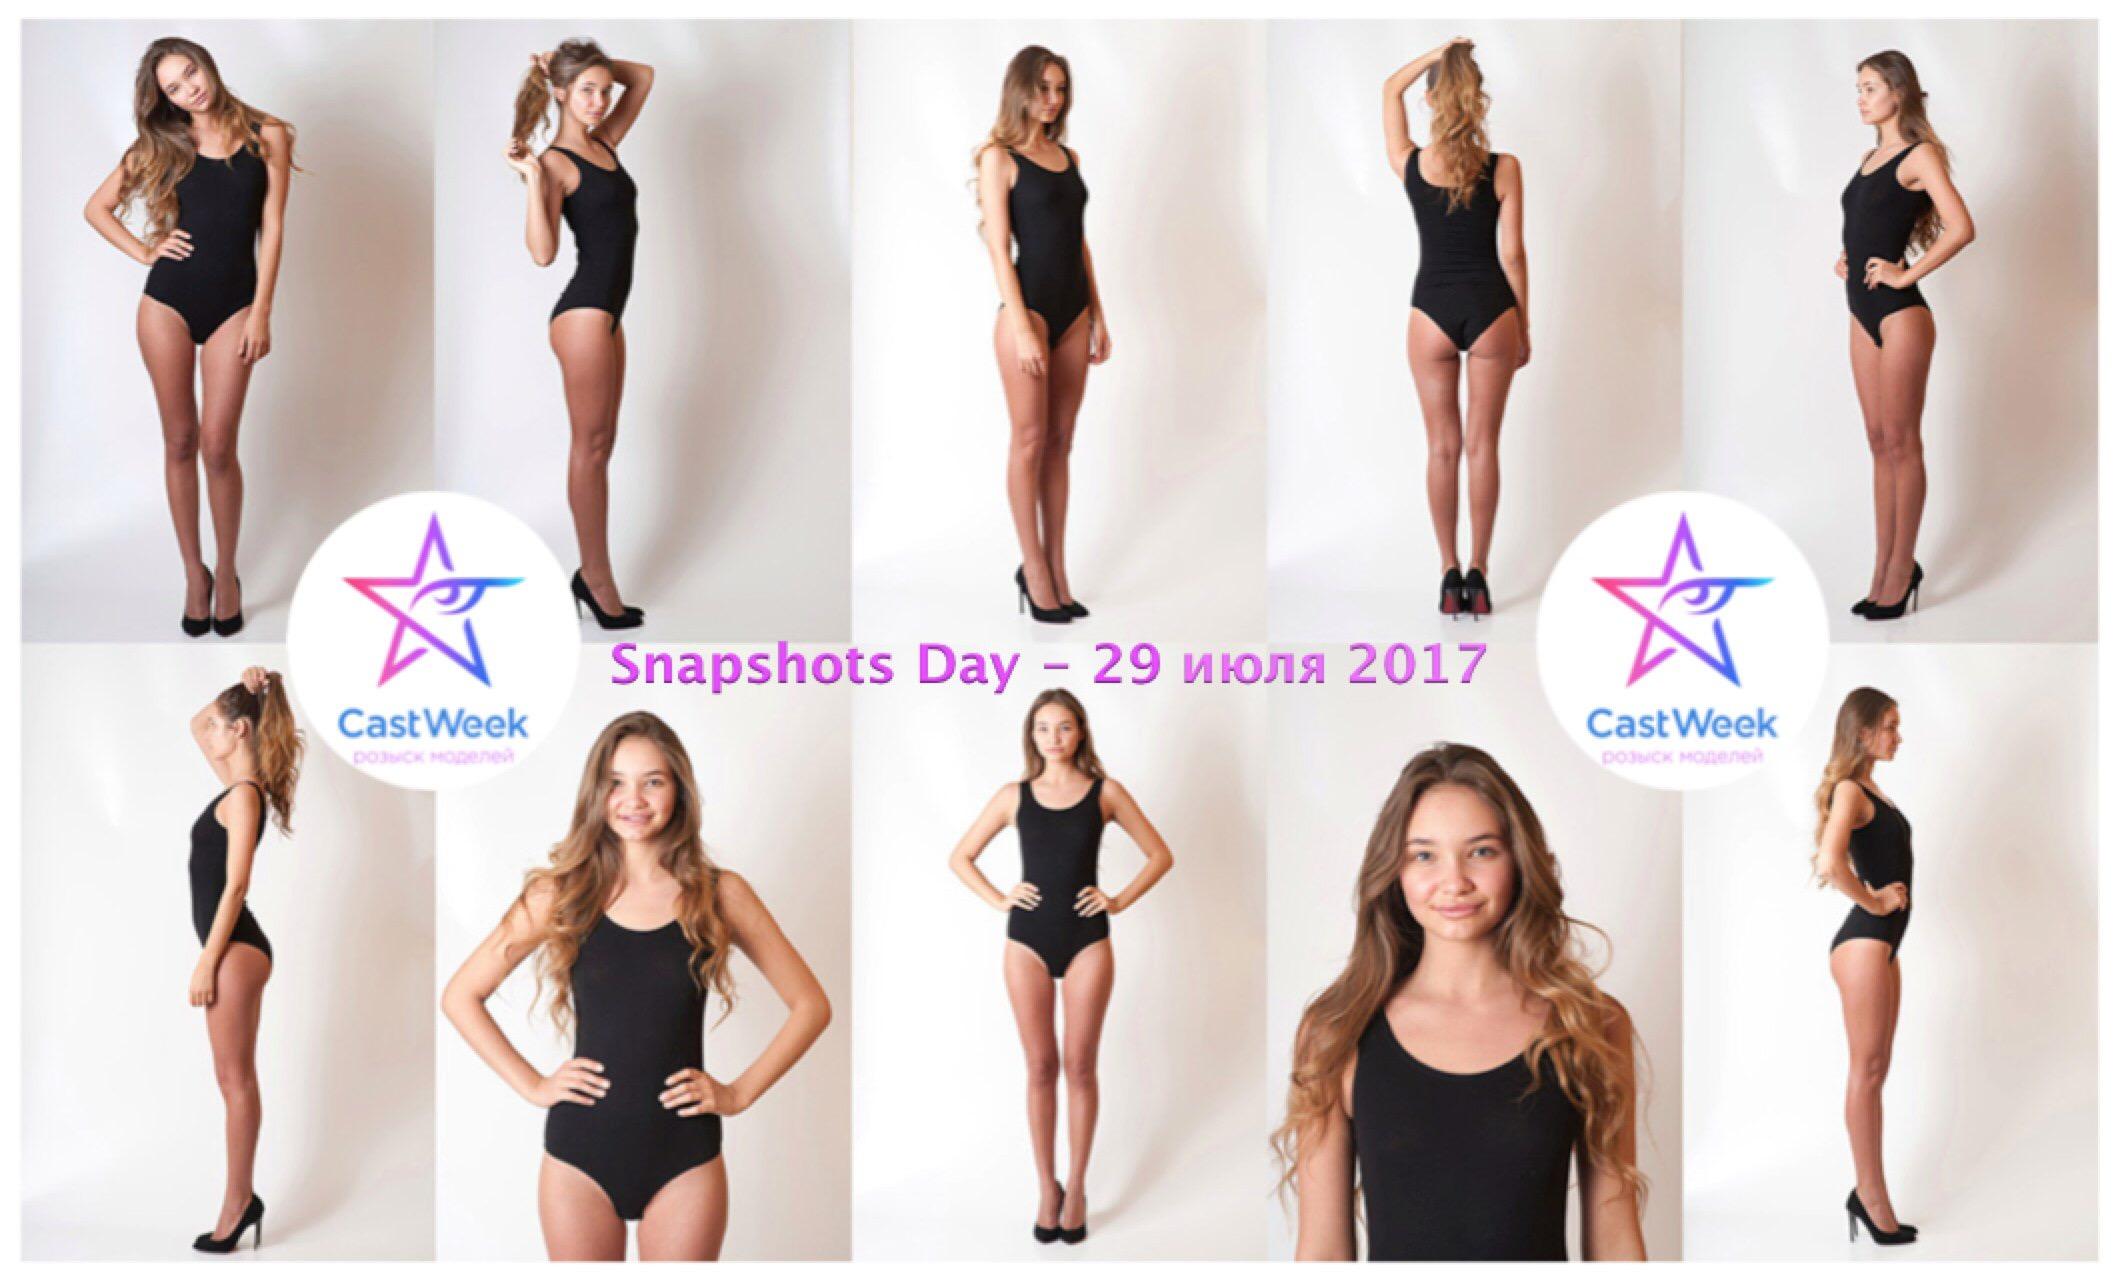 Москва! Сервис CastWeek приглашает начинающих и профессиональных моделей на "Snapshots Day", который состоится в Москве в субботу 29 июля.